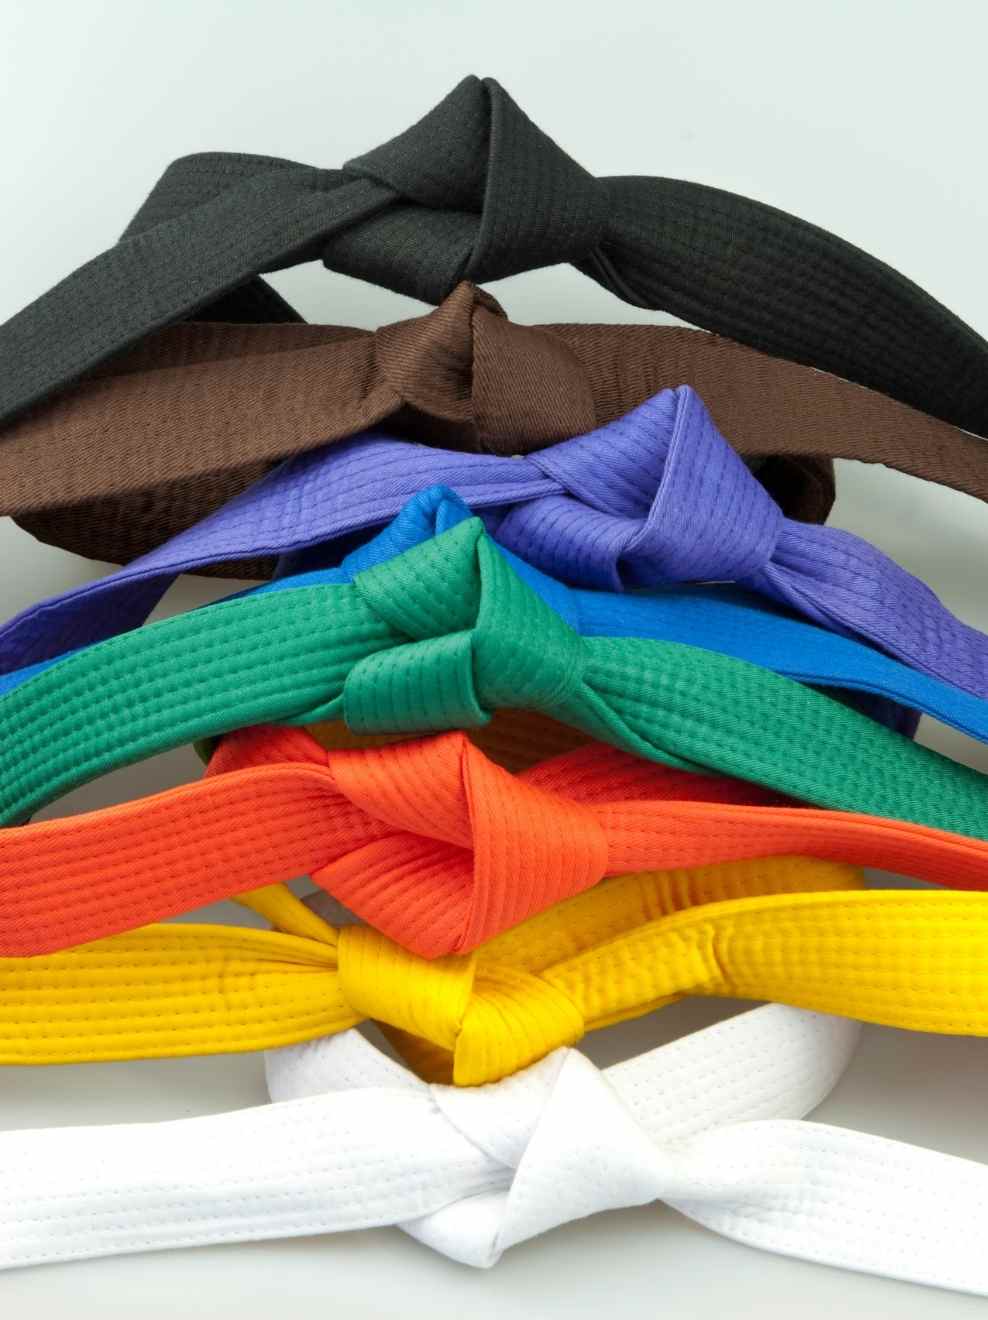 karate belts